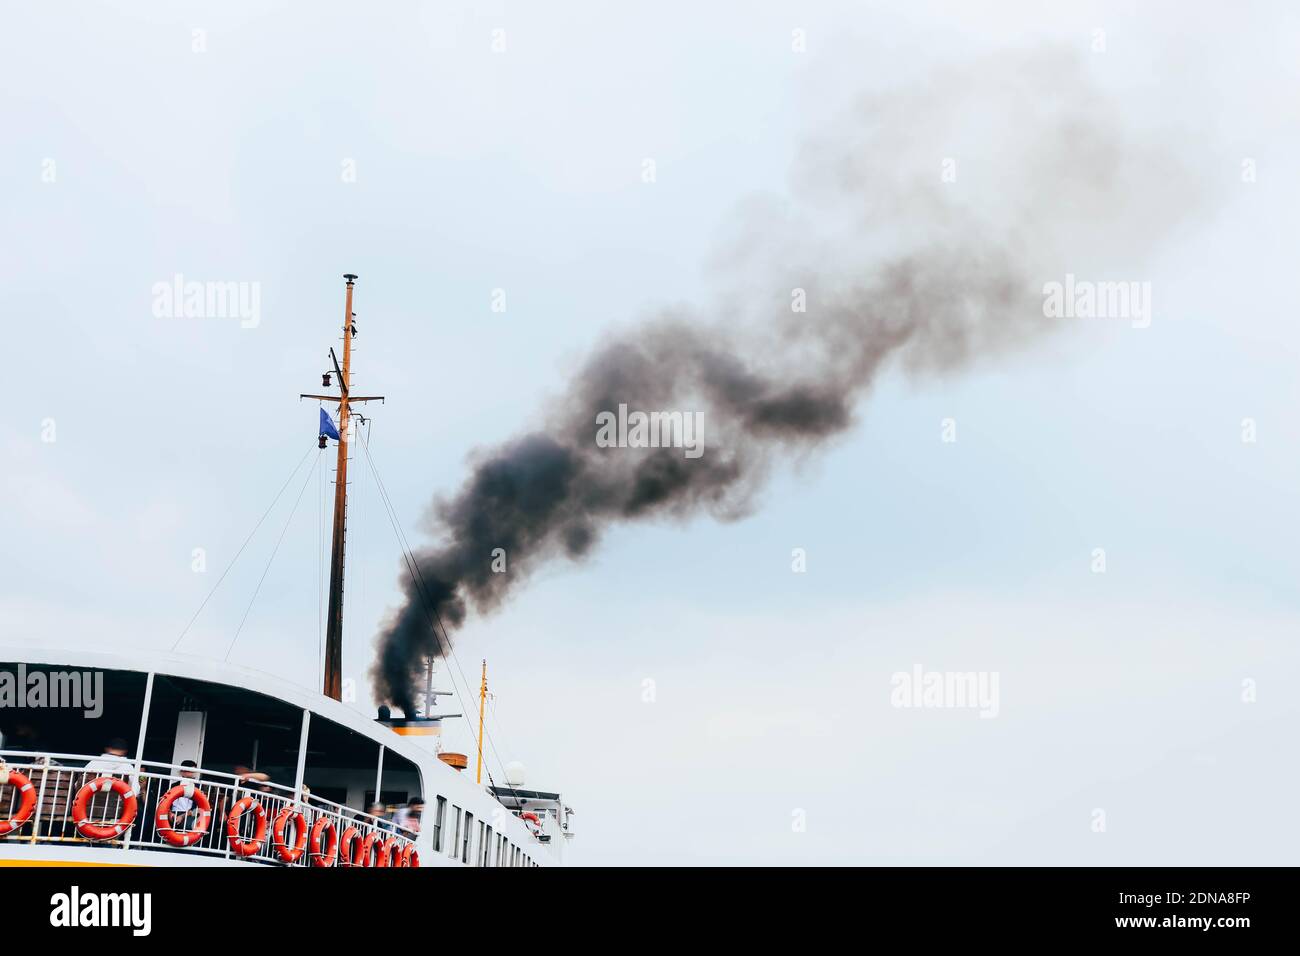 Schiff verschmutzende Luft mit giftigem Rauch auf blauem Himmel Hintergrund. Konzept des Problems der öffentlichen Gesundheit in bevölkerten Gebieten Stockfoto